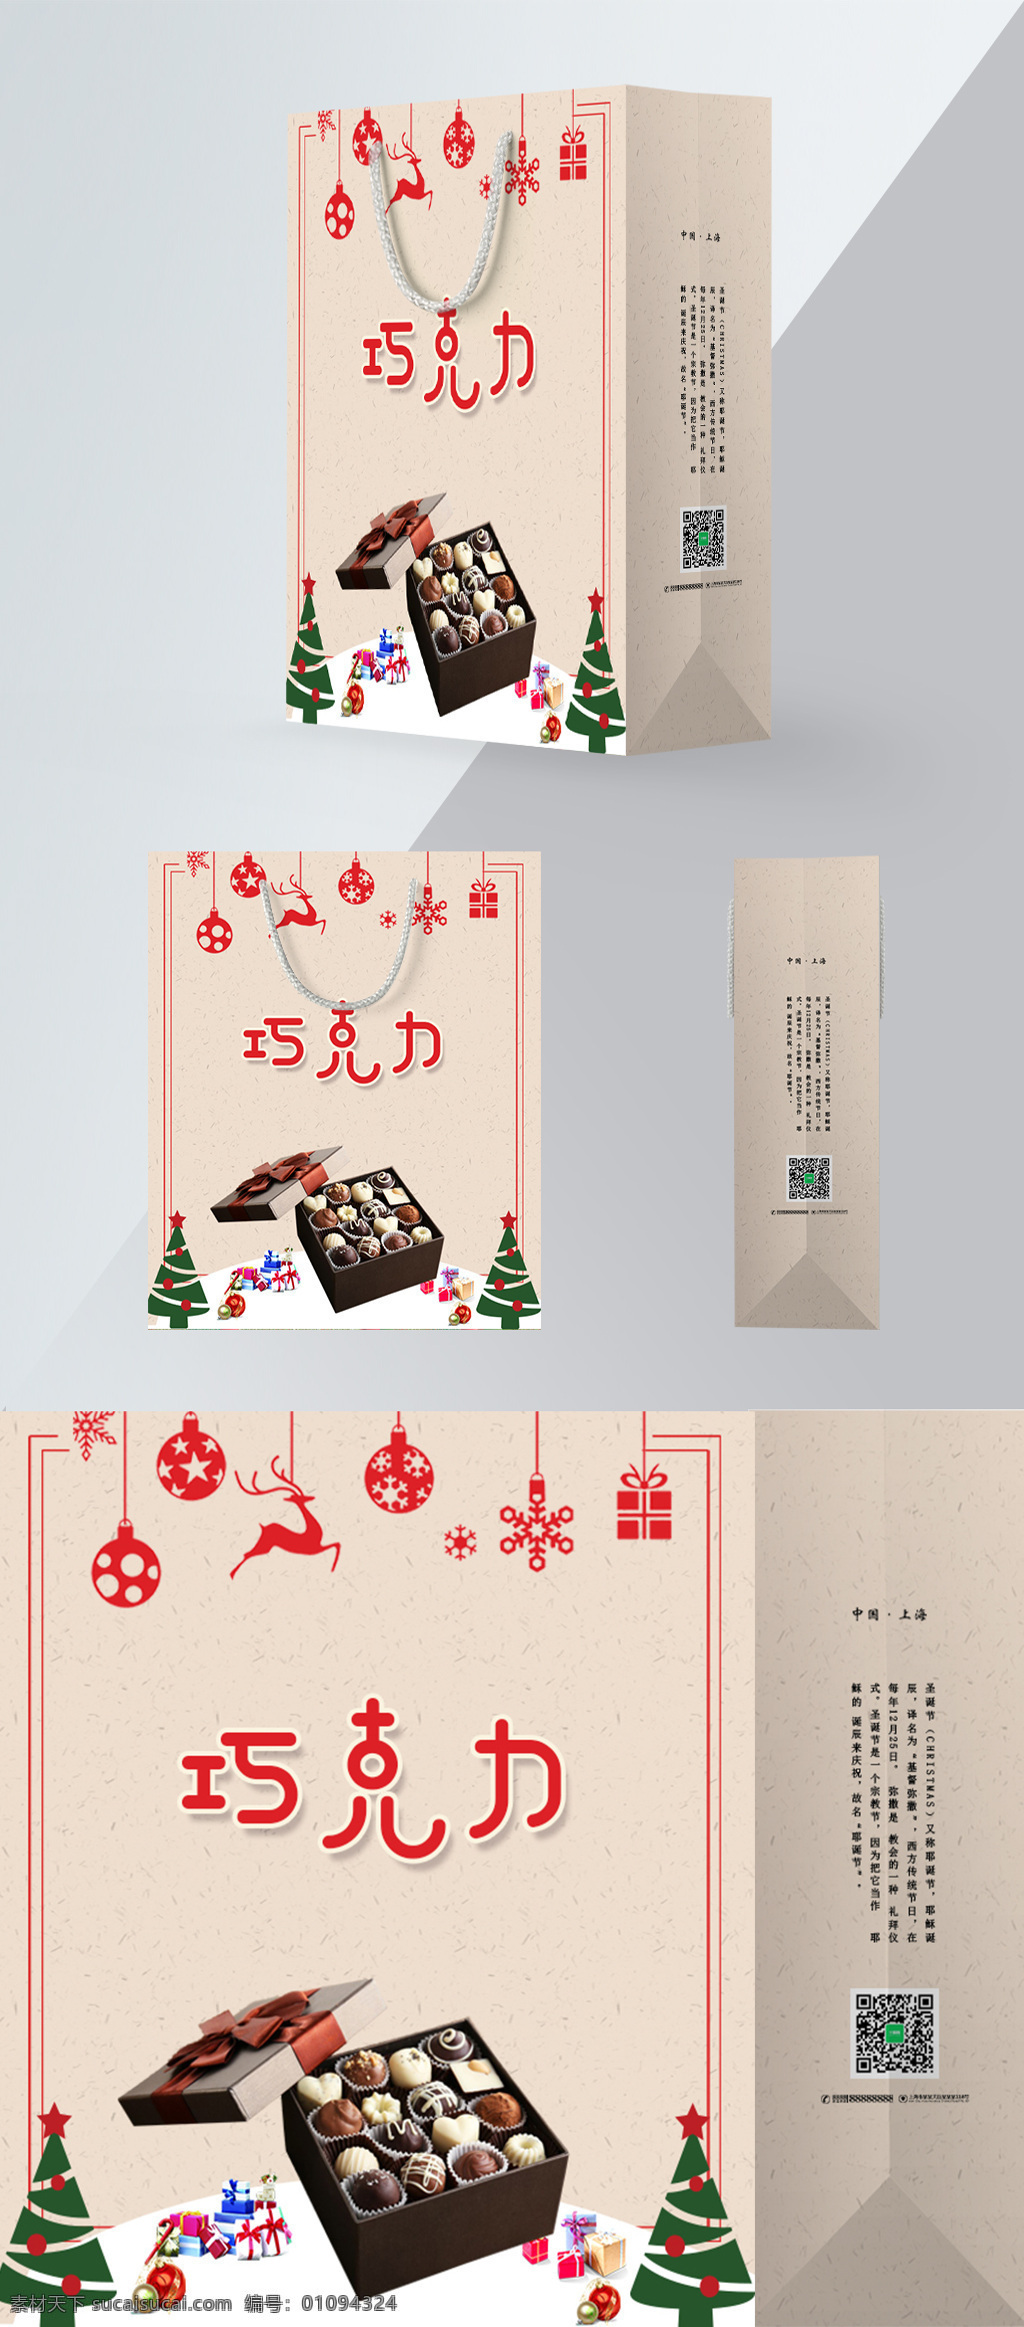 简约 大气 圣诞节 手提袋 圣诞 圣诞老人 圣诞节手提袋 圣诞节包装 节日包装设计 包装设计 手提袋设计 巧克力 巧克力包装